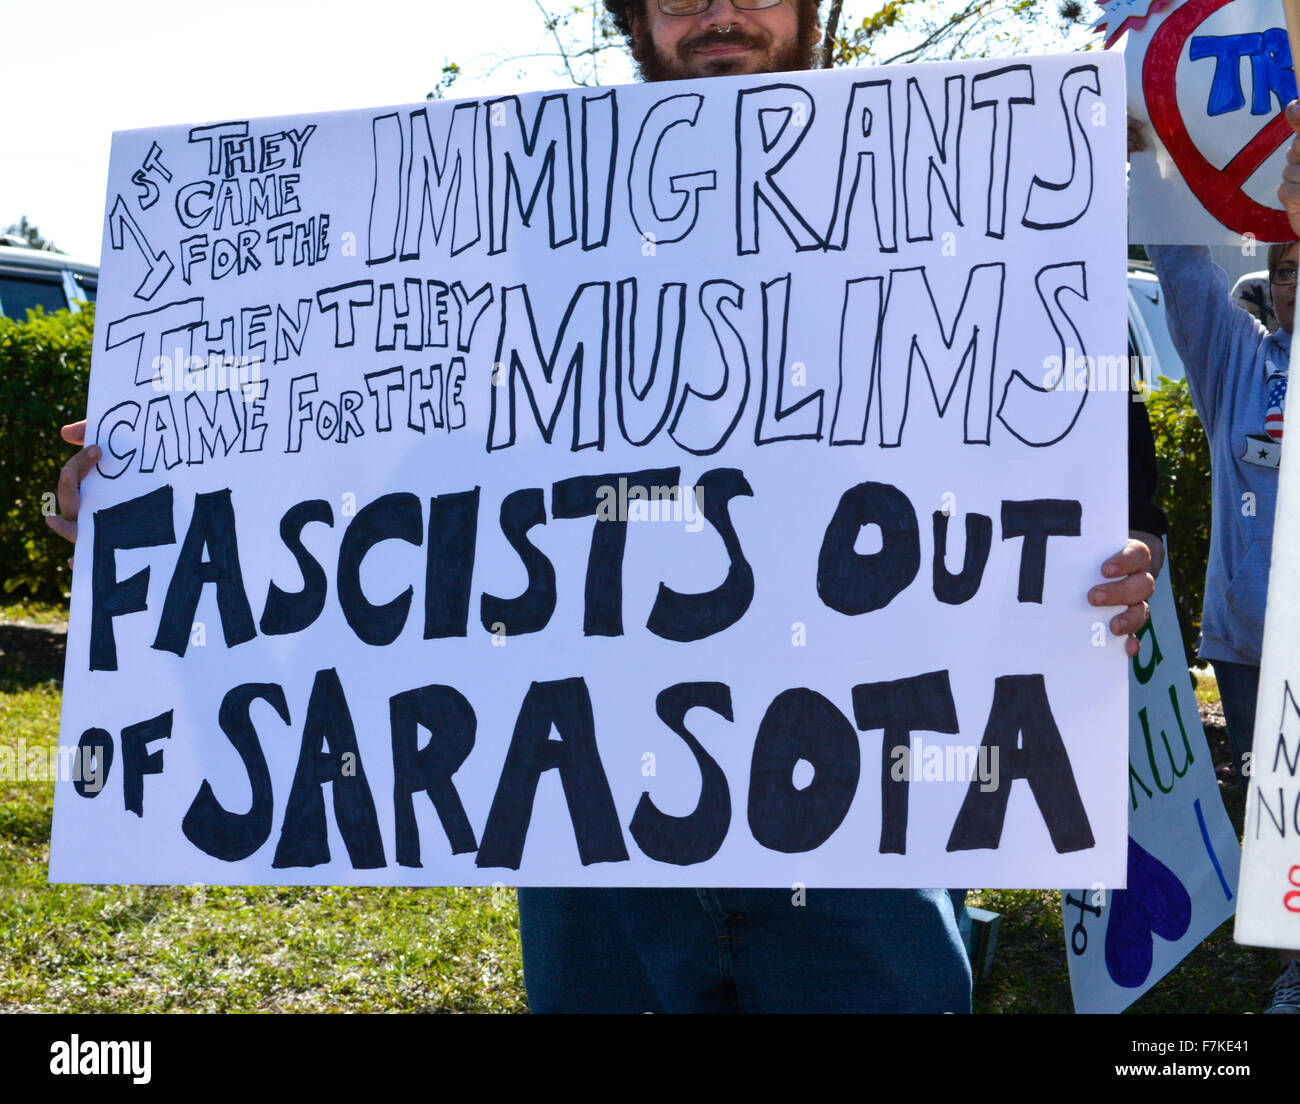 Ein Demonstrant bei einer Kundgebung von Donald Trump in Sarasota, Florida, hält ein Schild verkündet Trump einen Faschisten und rassistische Stockfoto